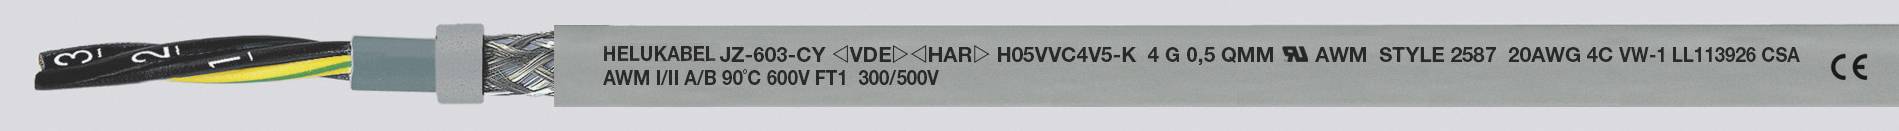 HELUKABEL JZ-603-CY Steuerleitung 3 G 0.50 mm² Grau 83720-500 500 m